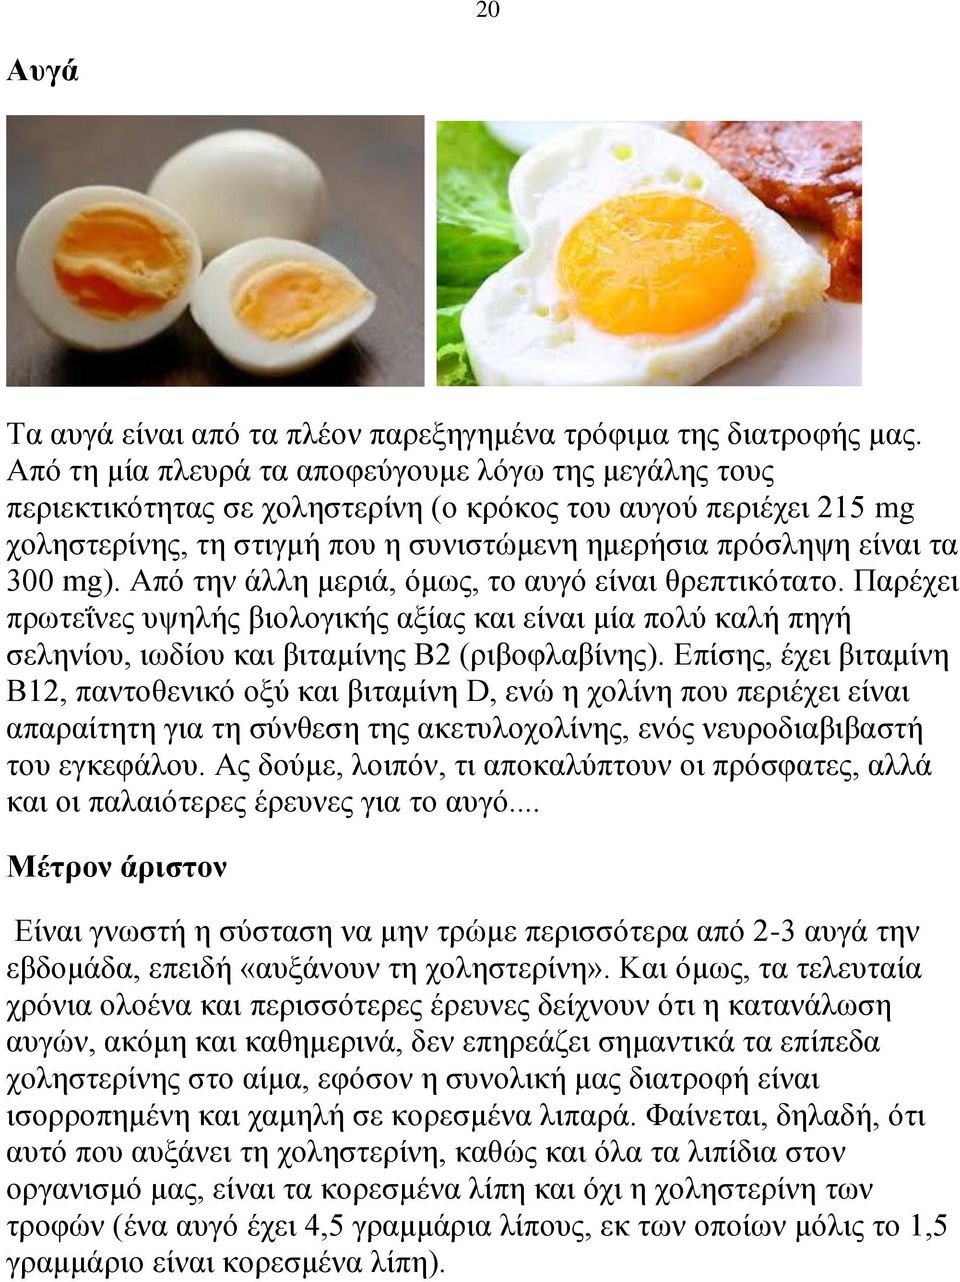 Από την άλλη μεριά, όμως, το αυγό είναι θρεπτικότατο. Παρέχει πρωτεΐνες υψηλής βιολογικής αξίας και είναι μία πολύ καλή πηγή σεληνίου, ιωδίου και βιταμίνης Β2 (ριβοφλαβίνης).